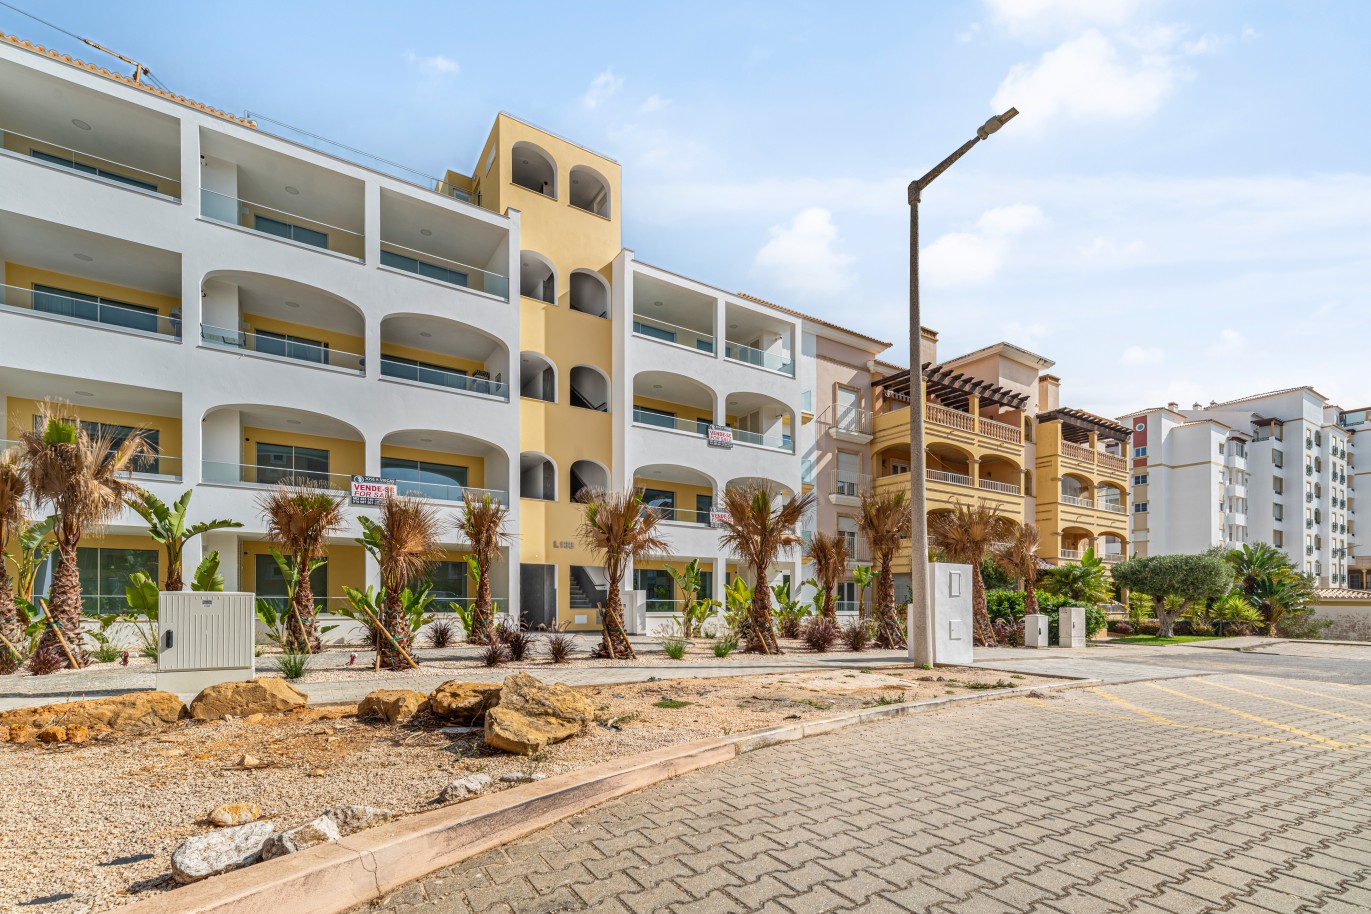 Apartamento, com terraço, para venda, em Lagos, Algarve_238620